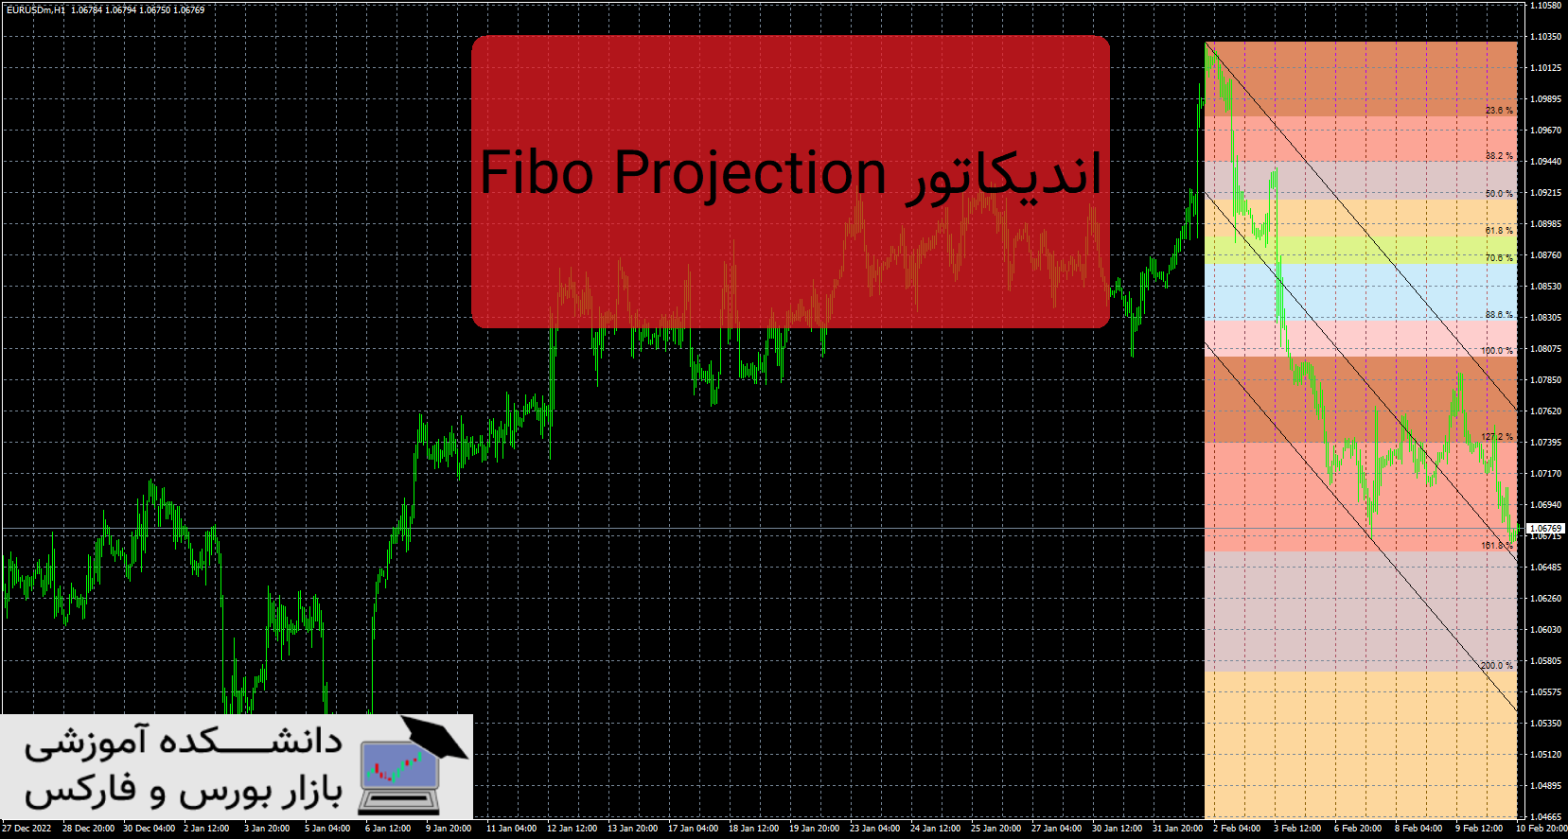 Fibo Projection دانلود و معرفی اندیکاتور